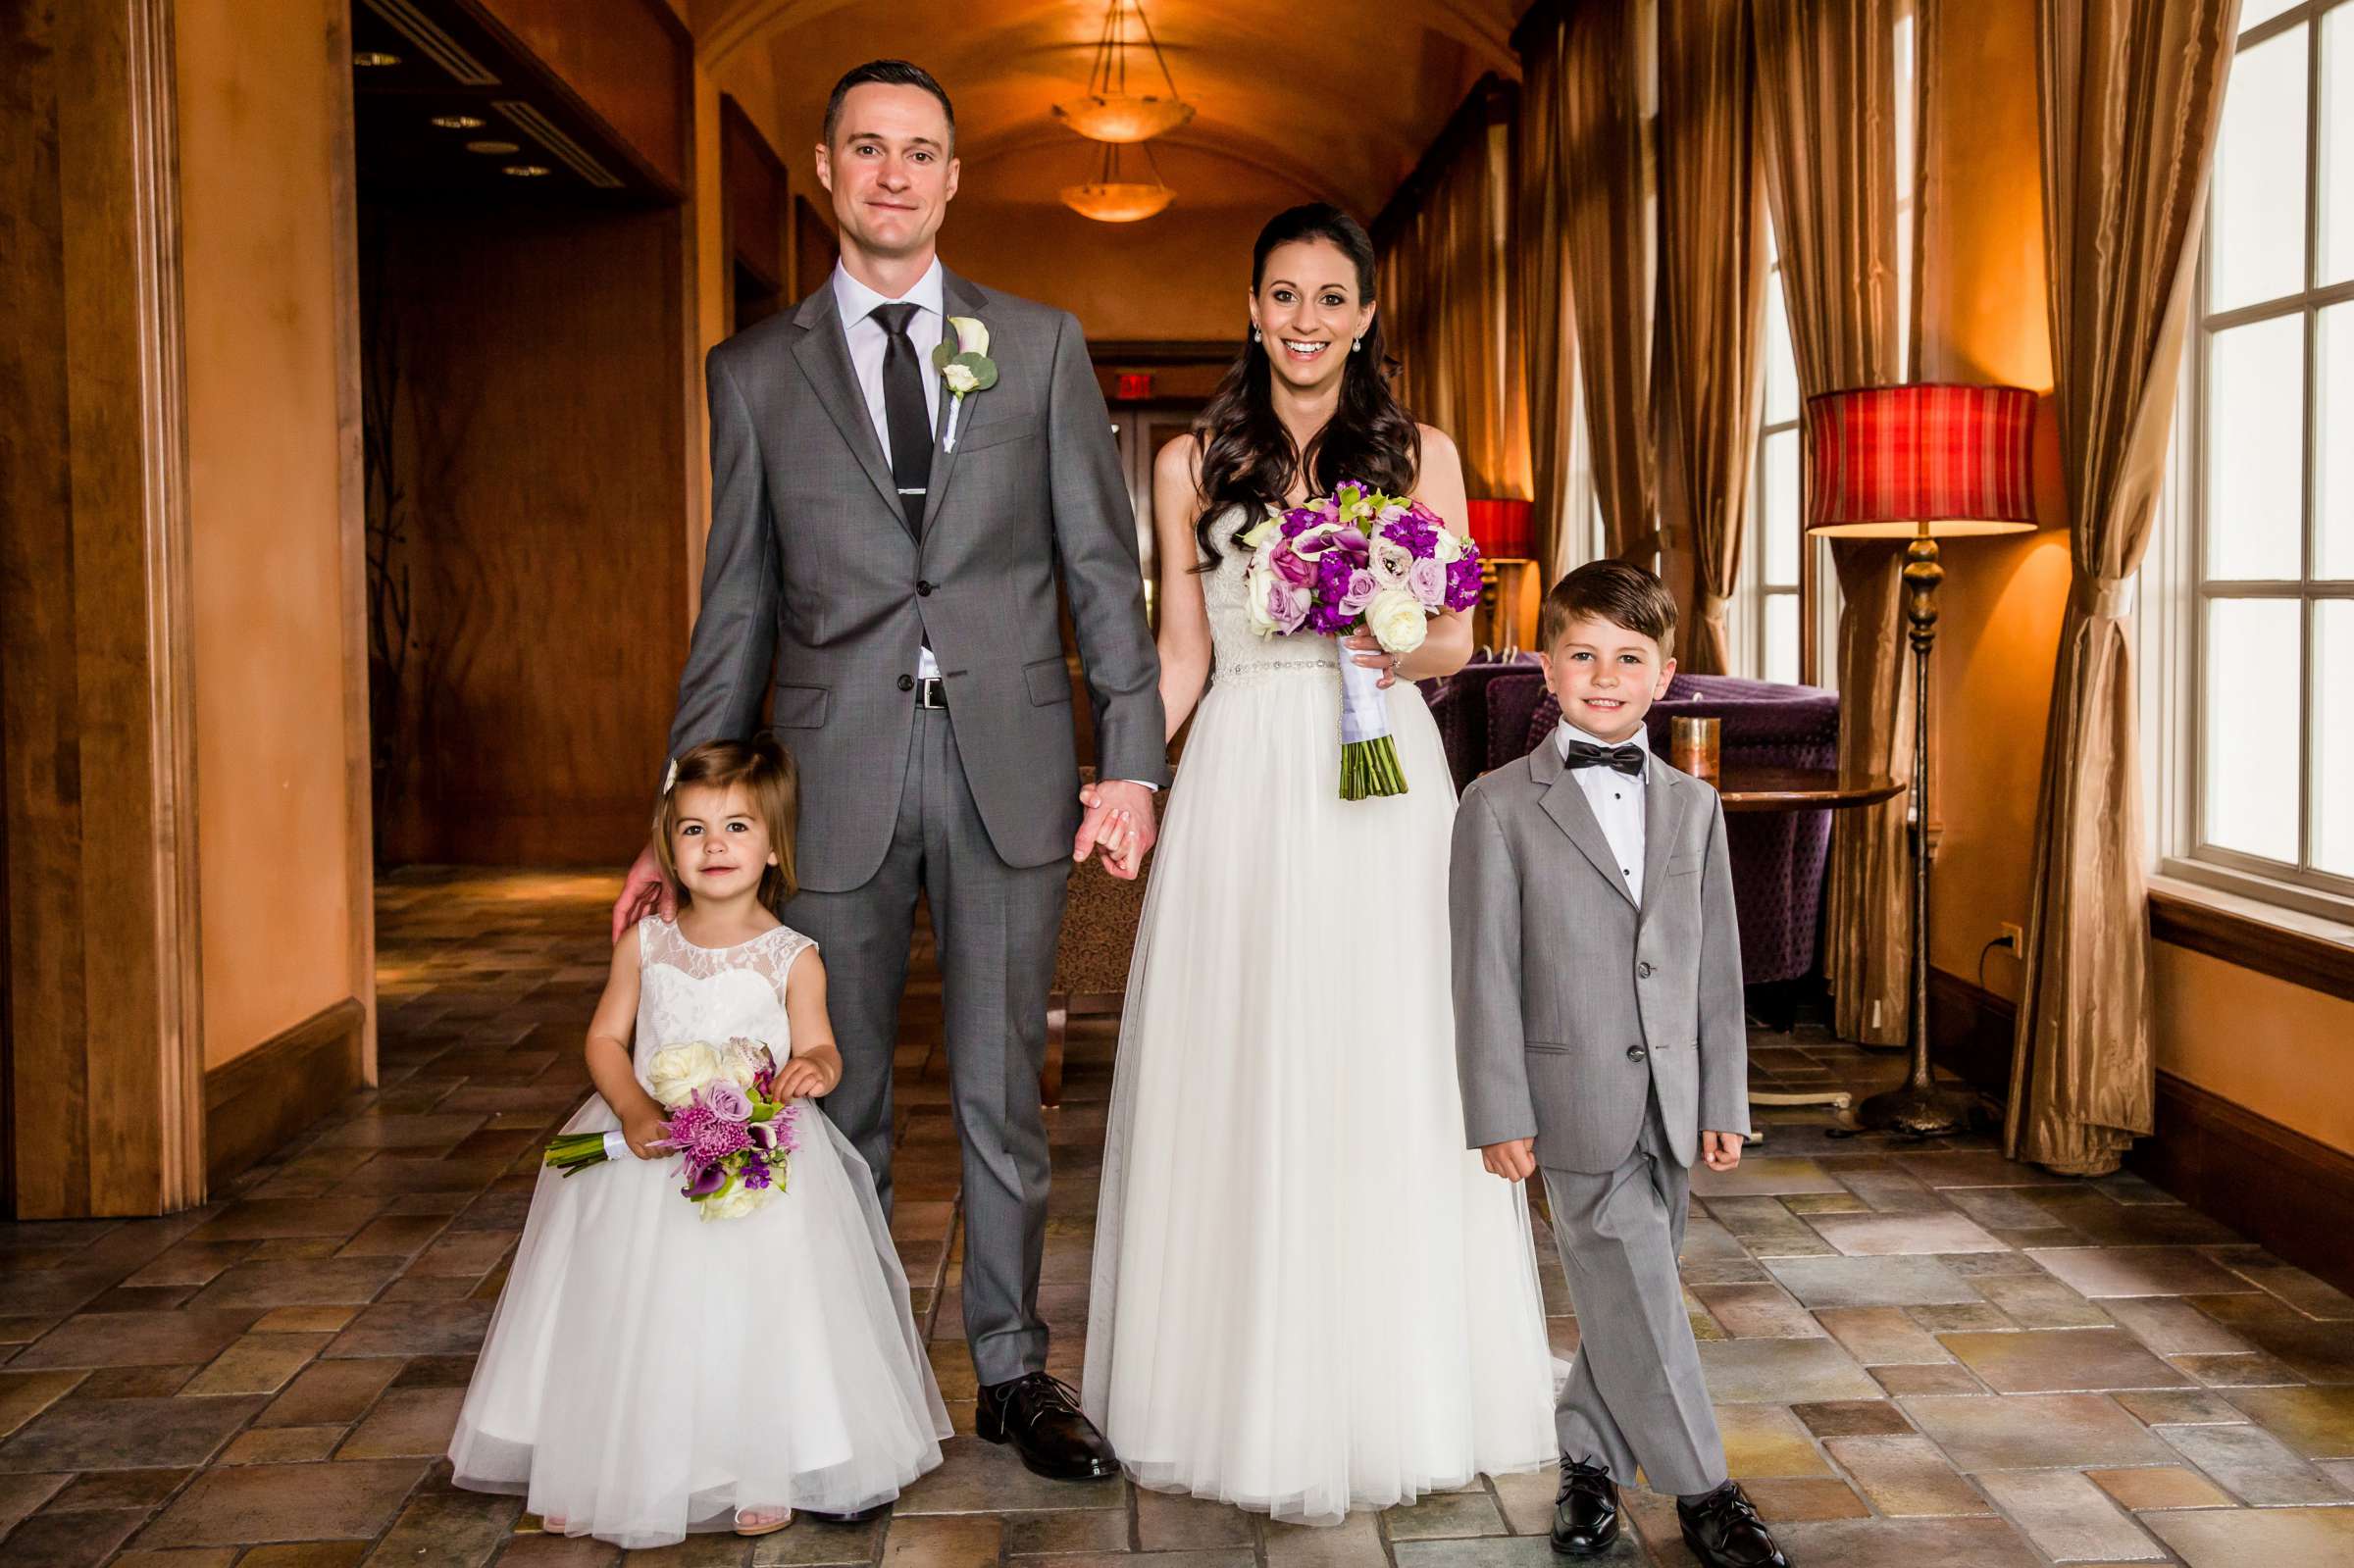 Park Hyatt Aviara Wedding, Jena and Keaton Wedding Photo #12 by True Photography